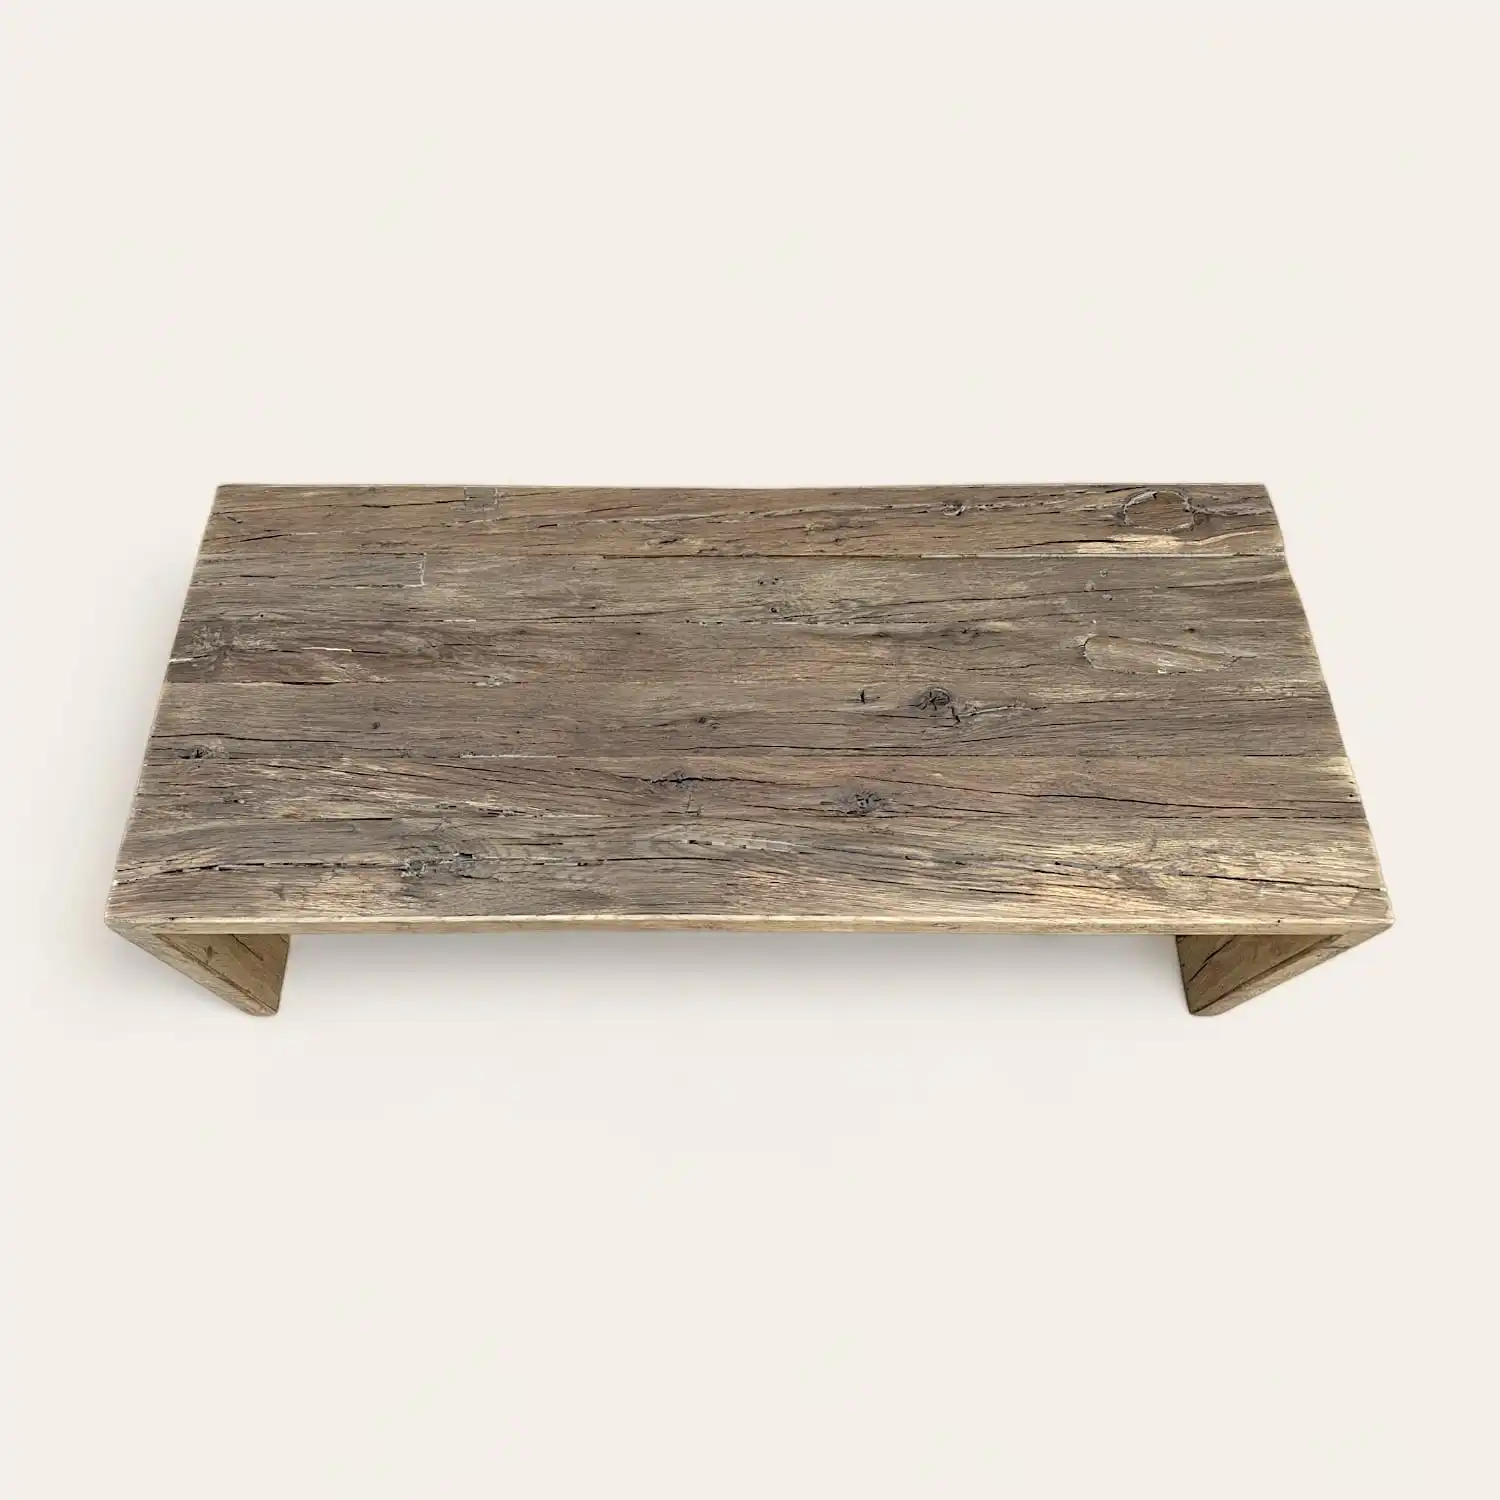  Une table basse rustique en vieux bois avec un plateau en bois. 